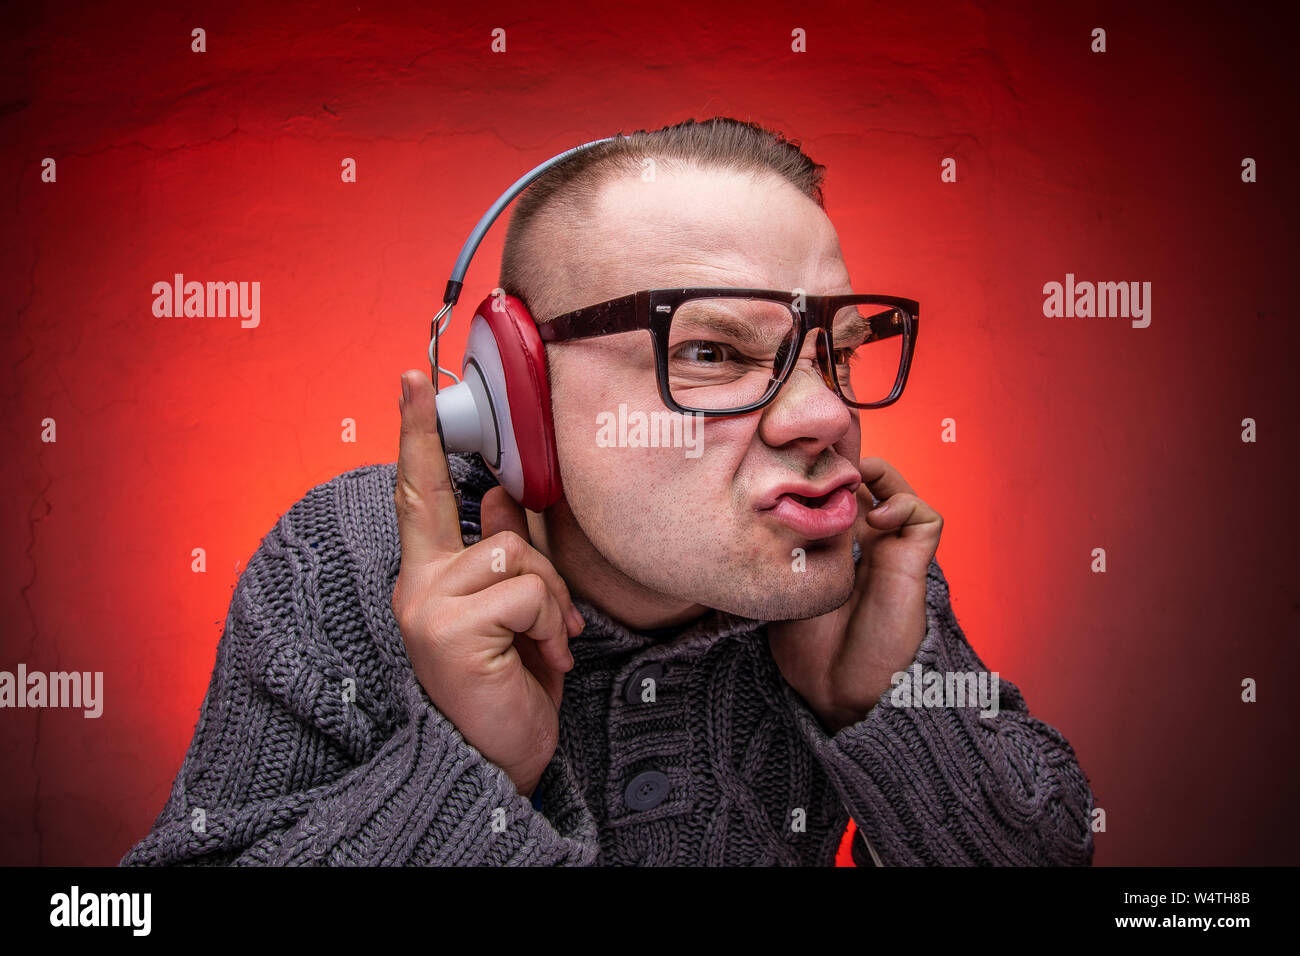 El hombre disfruta de música a alto volumen en los auriculares. Foto de stock